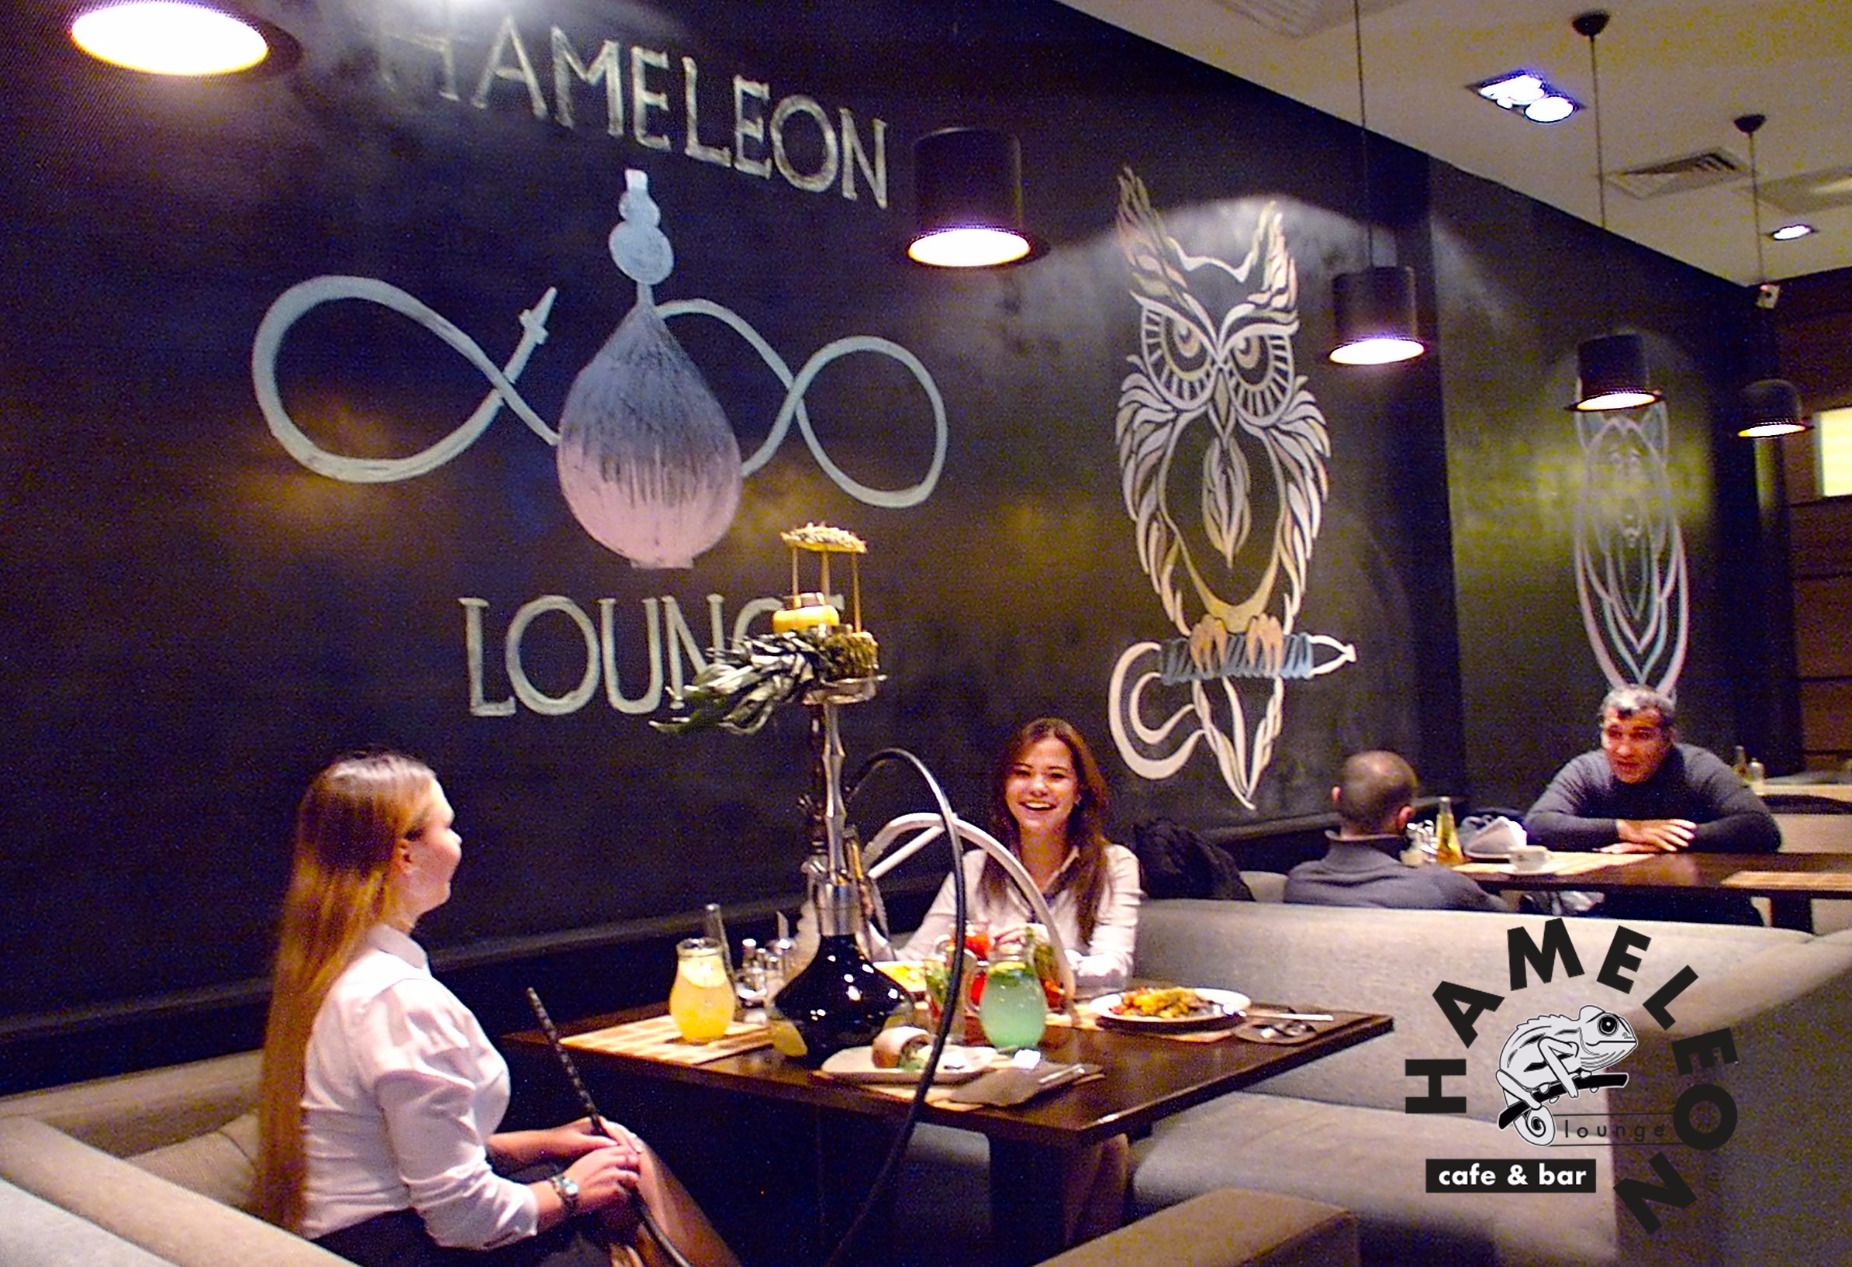 Фото null «Hameleon lounge» – смотри на сайте!